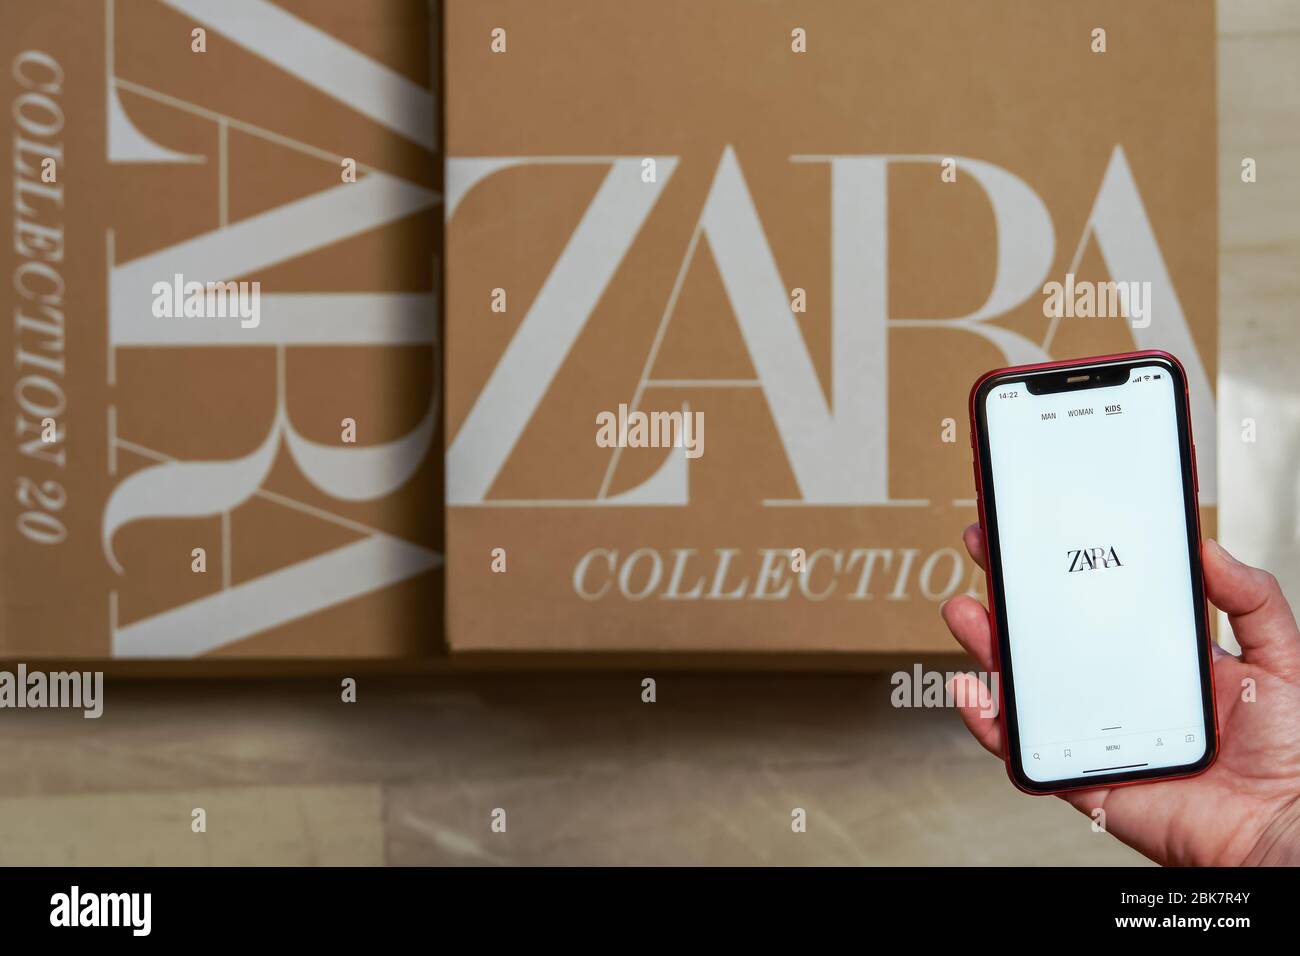 Zara espagnol vêtements marque boîte de livraison en ligne. Passez votre  smartphone sur la page Web de la collection de détaillants Inditex,  ci-dessus livré avec logo Photo Stock - Alamy